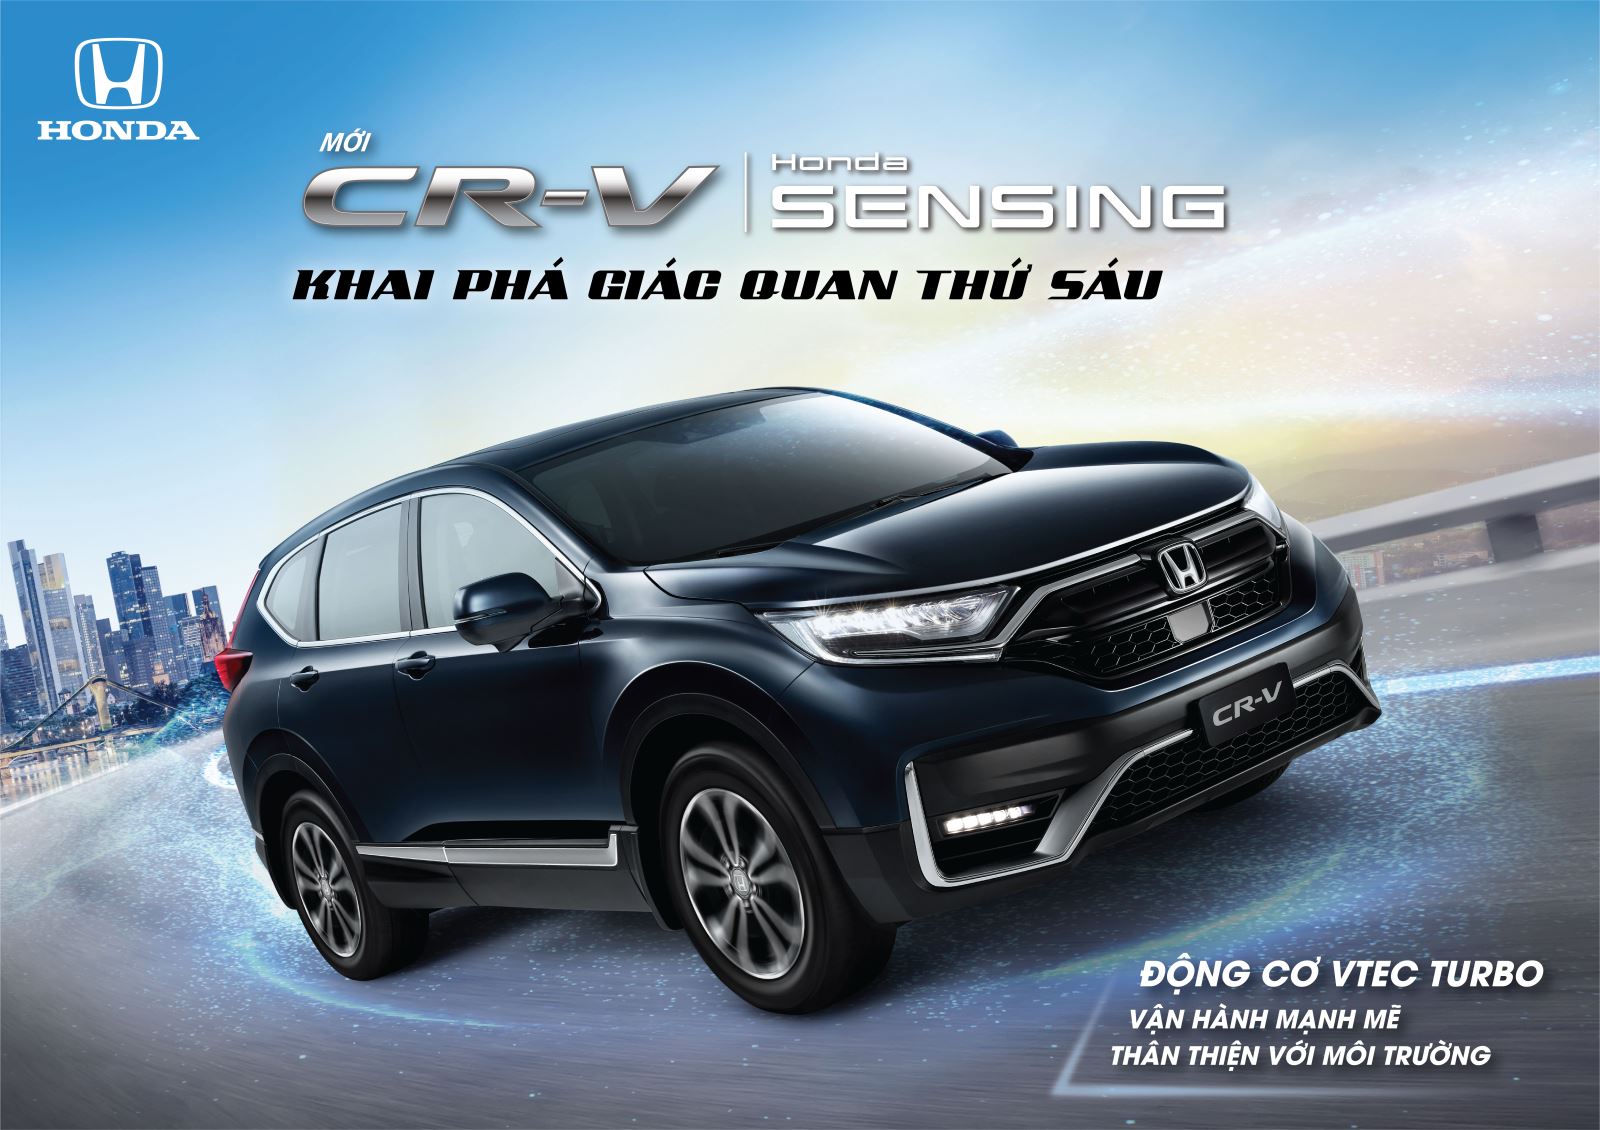 Honda Việt Nam chính thức ra mắt Phiên bản mới Honda CR-V 2020